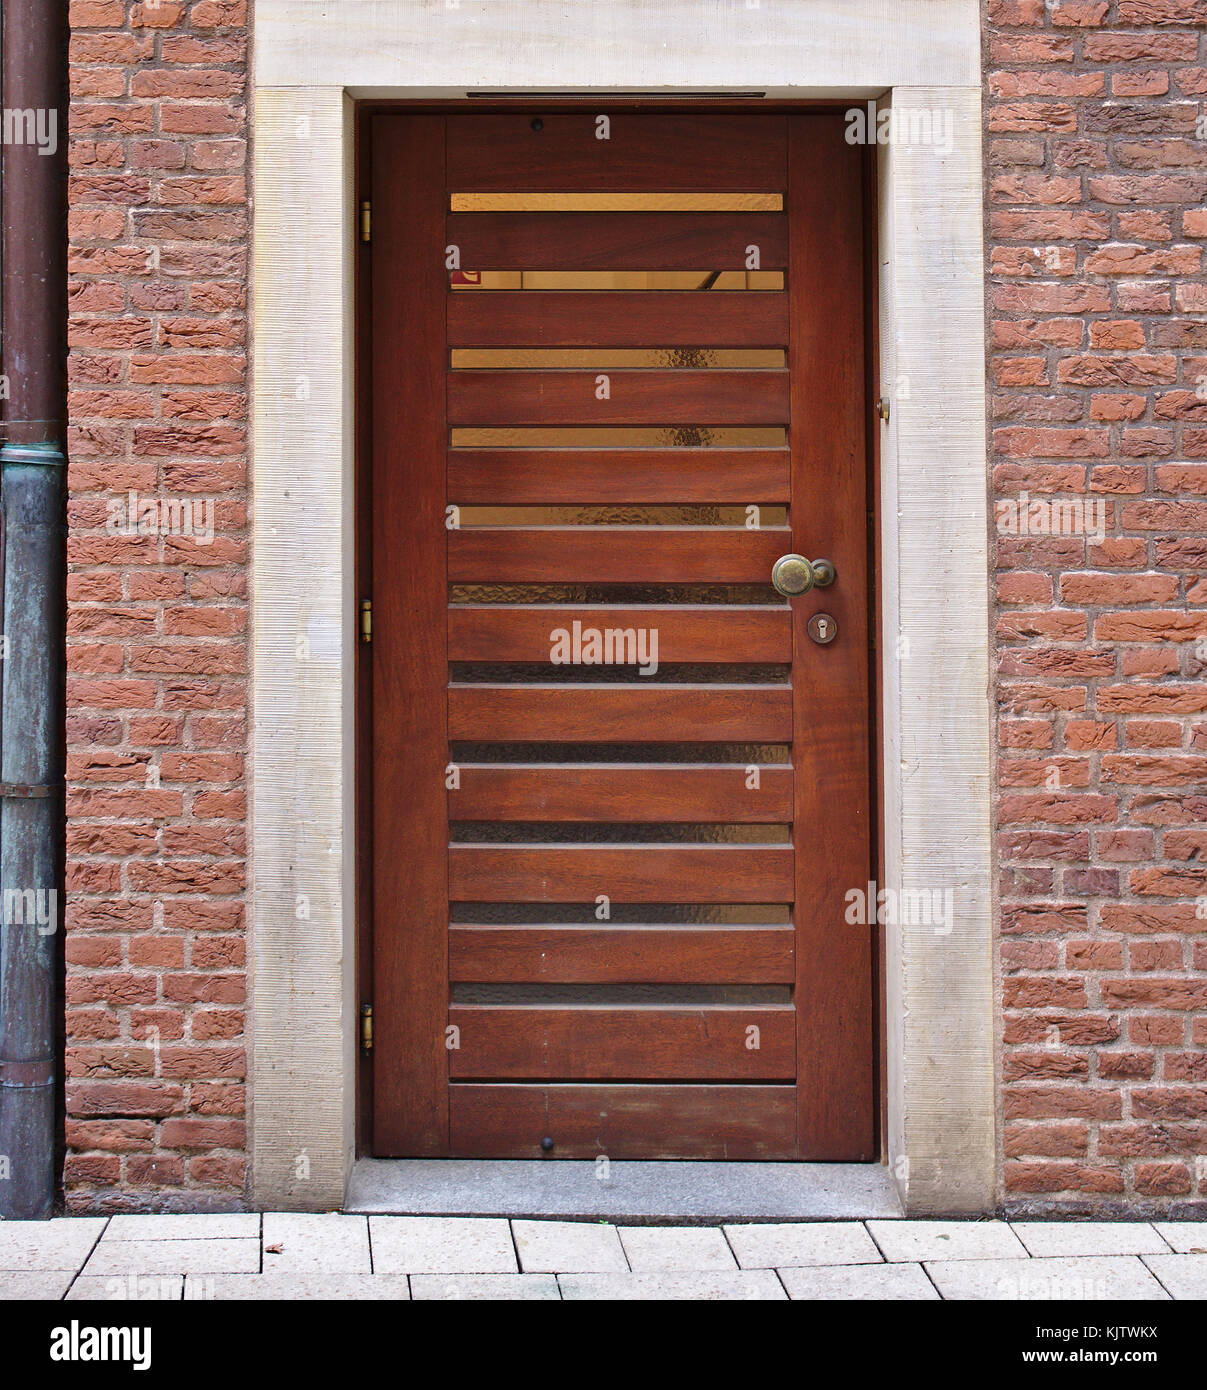 Porte en bois moderne en brique rouge avec des volets de fenêtre horizontale étroite et descente Banque D'Images